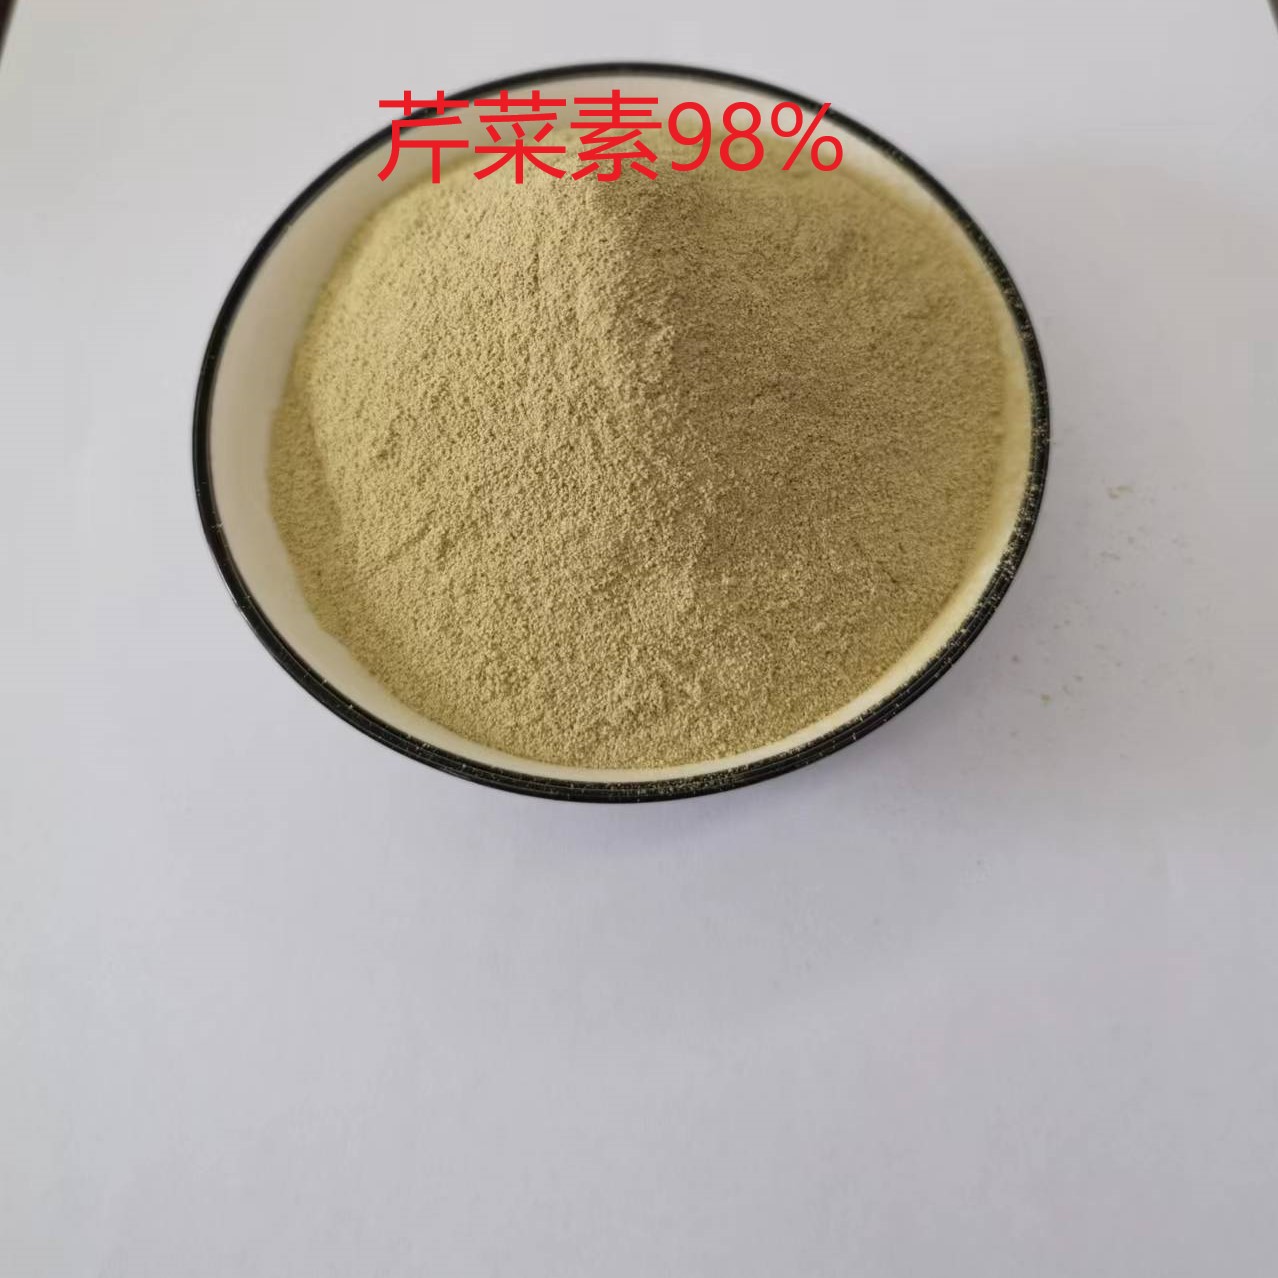 芹菜素CAS520-36-5四川轩禾康生物